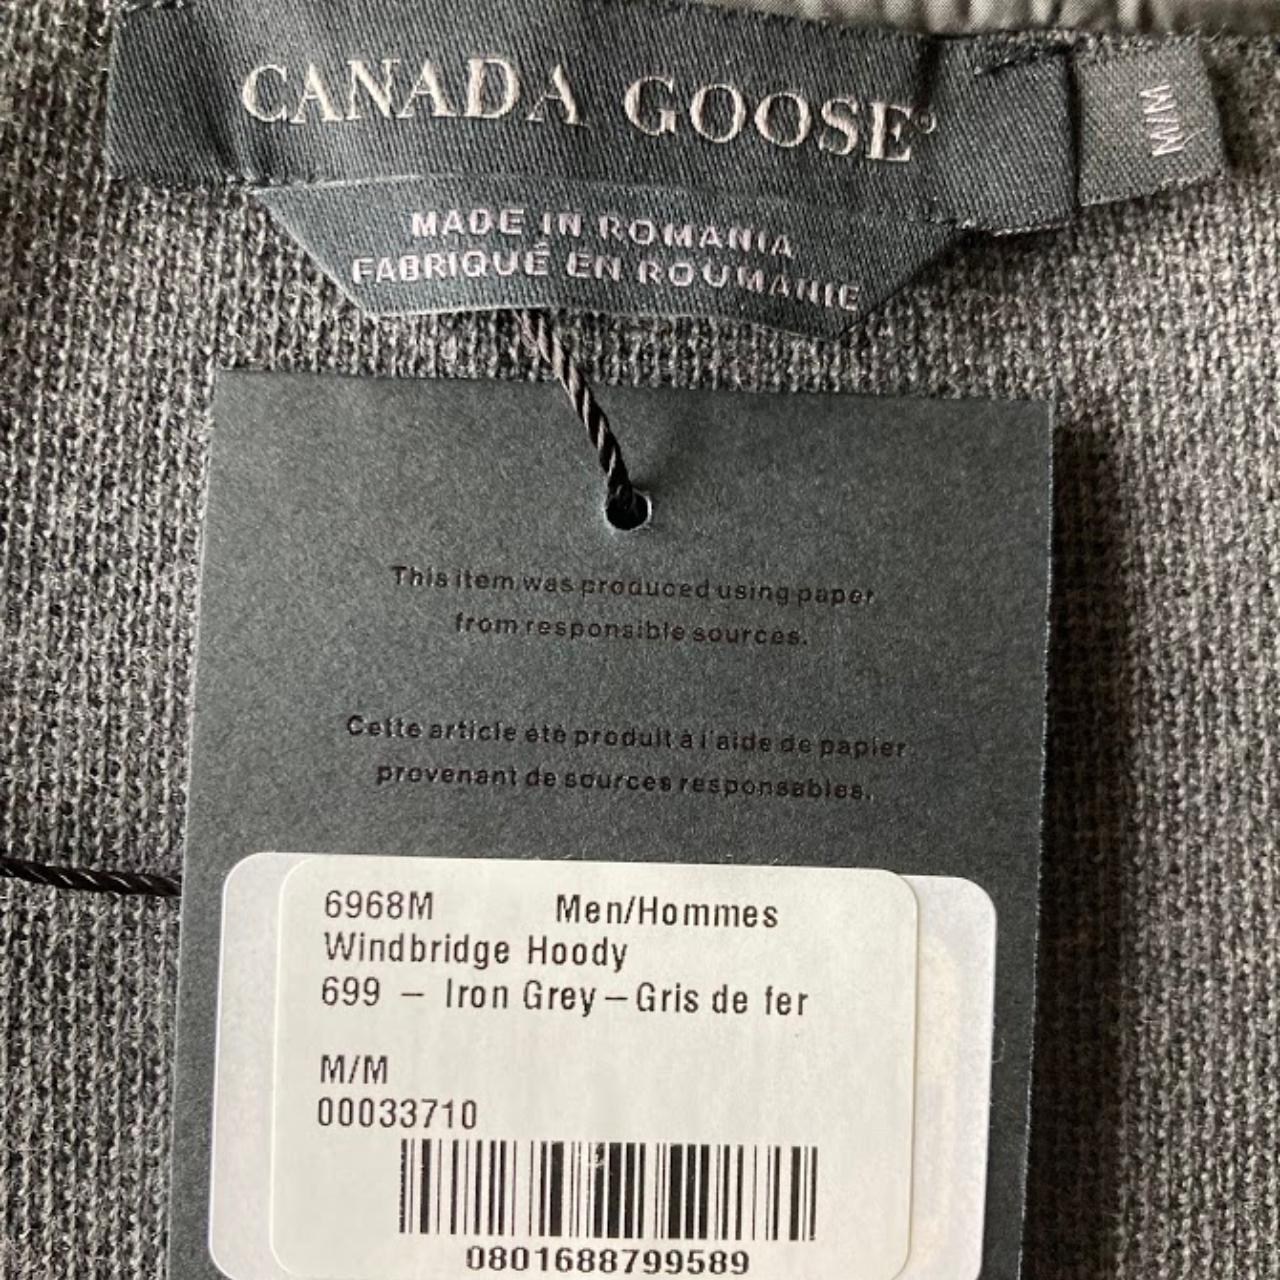 Brand new, unworn Canada Goose Windbridge Hoody... - Depop